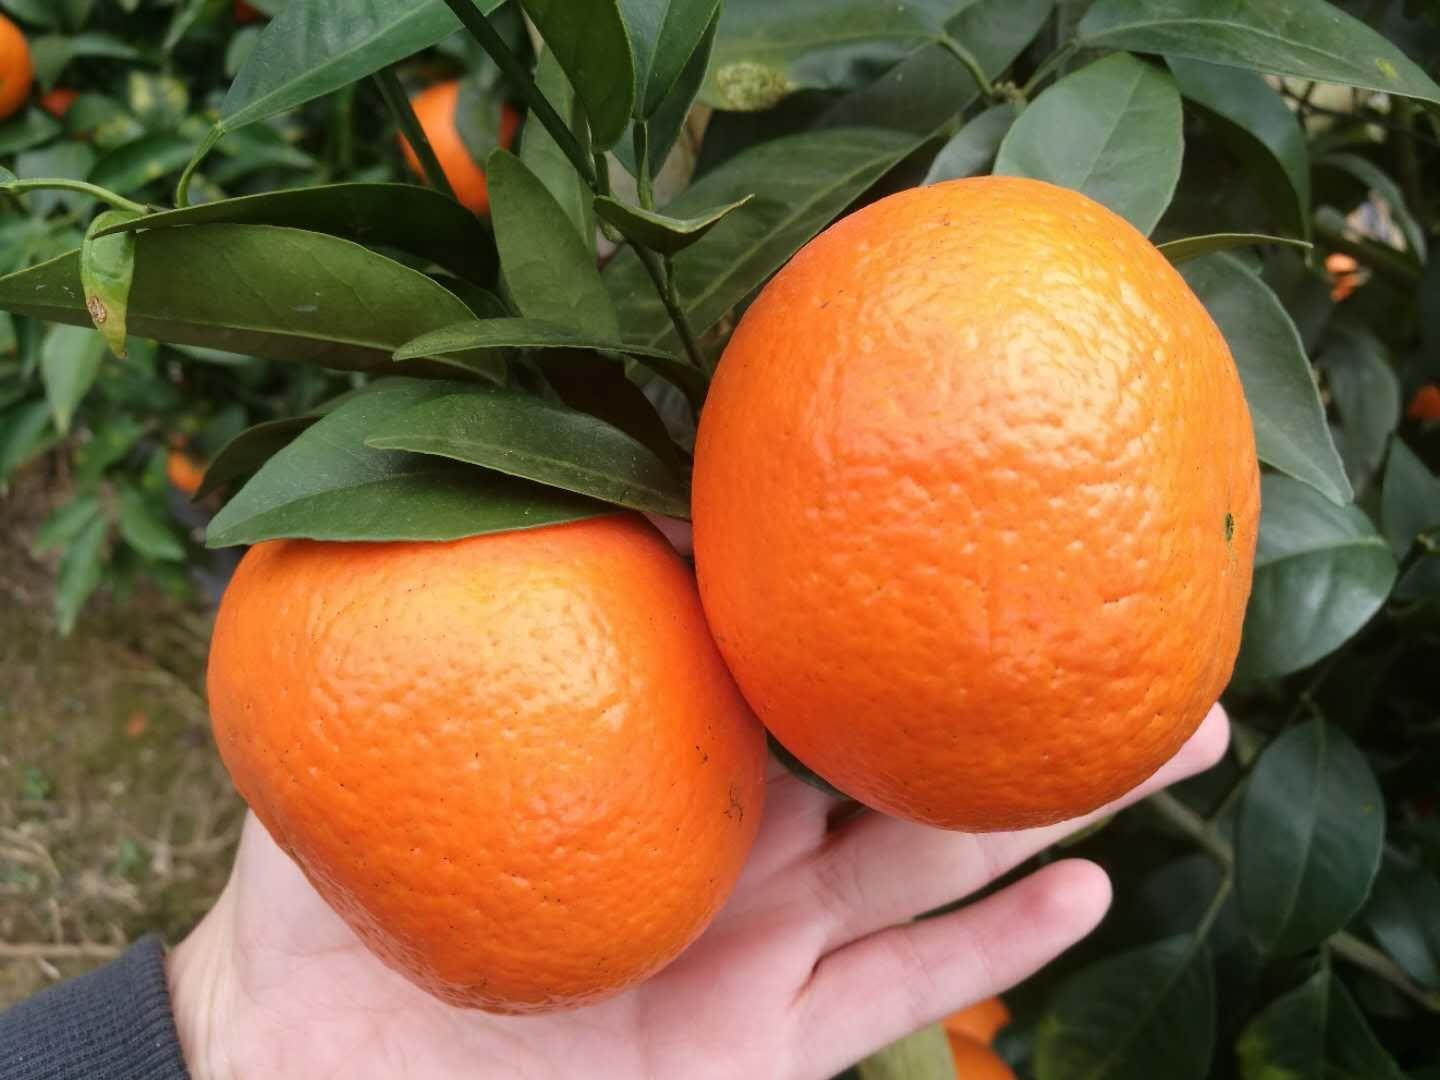 沙糖桔 沃柑 金桔 蜜橘 相同与不同?